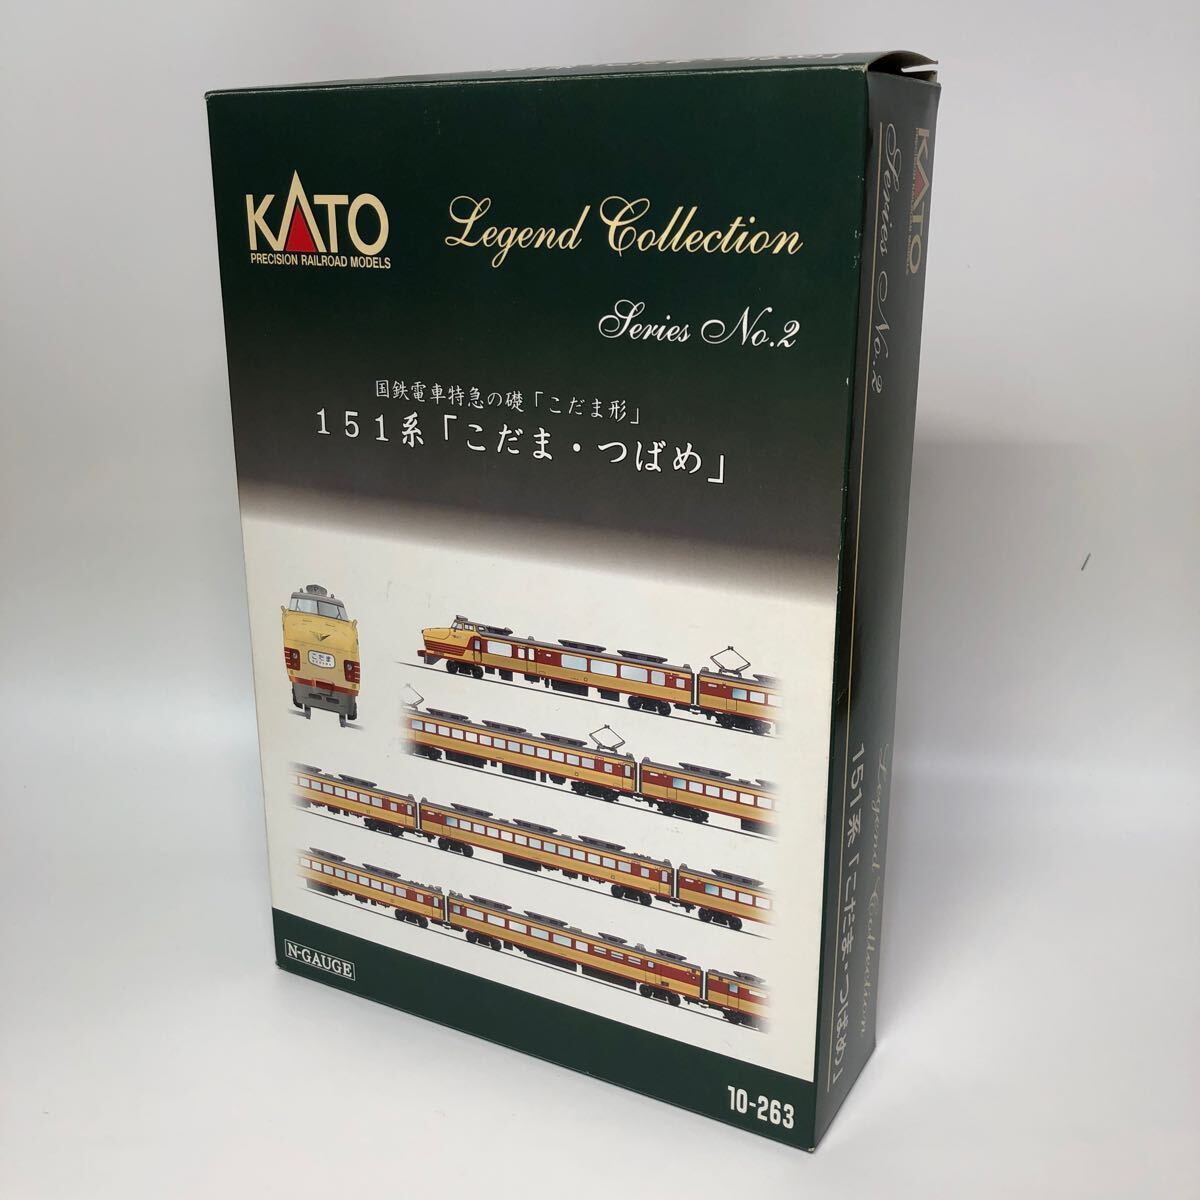 KATO Legend Collection NO.2 国鉄 特急 こだま つばめ 151系 Nゲージ 鉄道模型 10-263レジェンドコレクション カトー の画像1